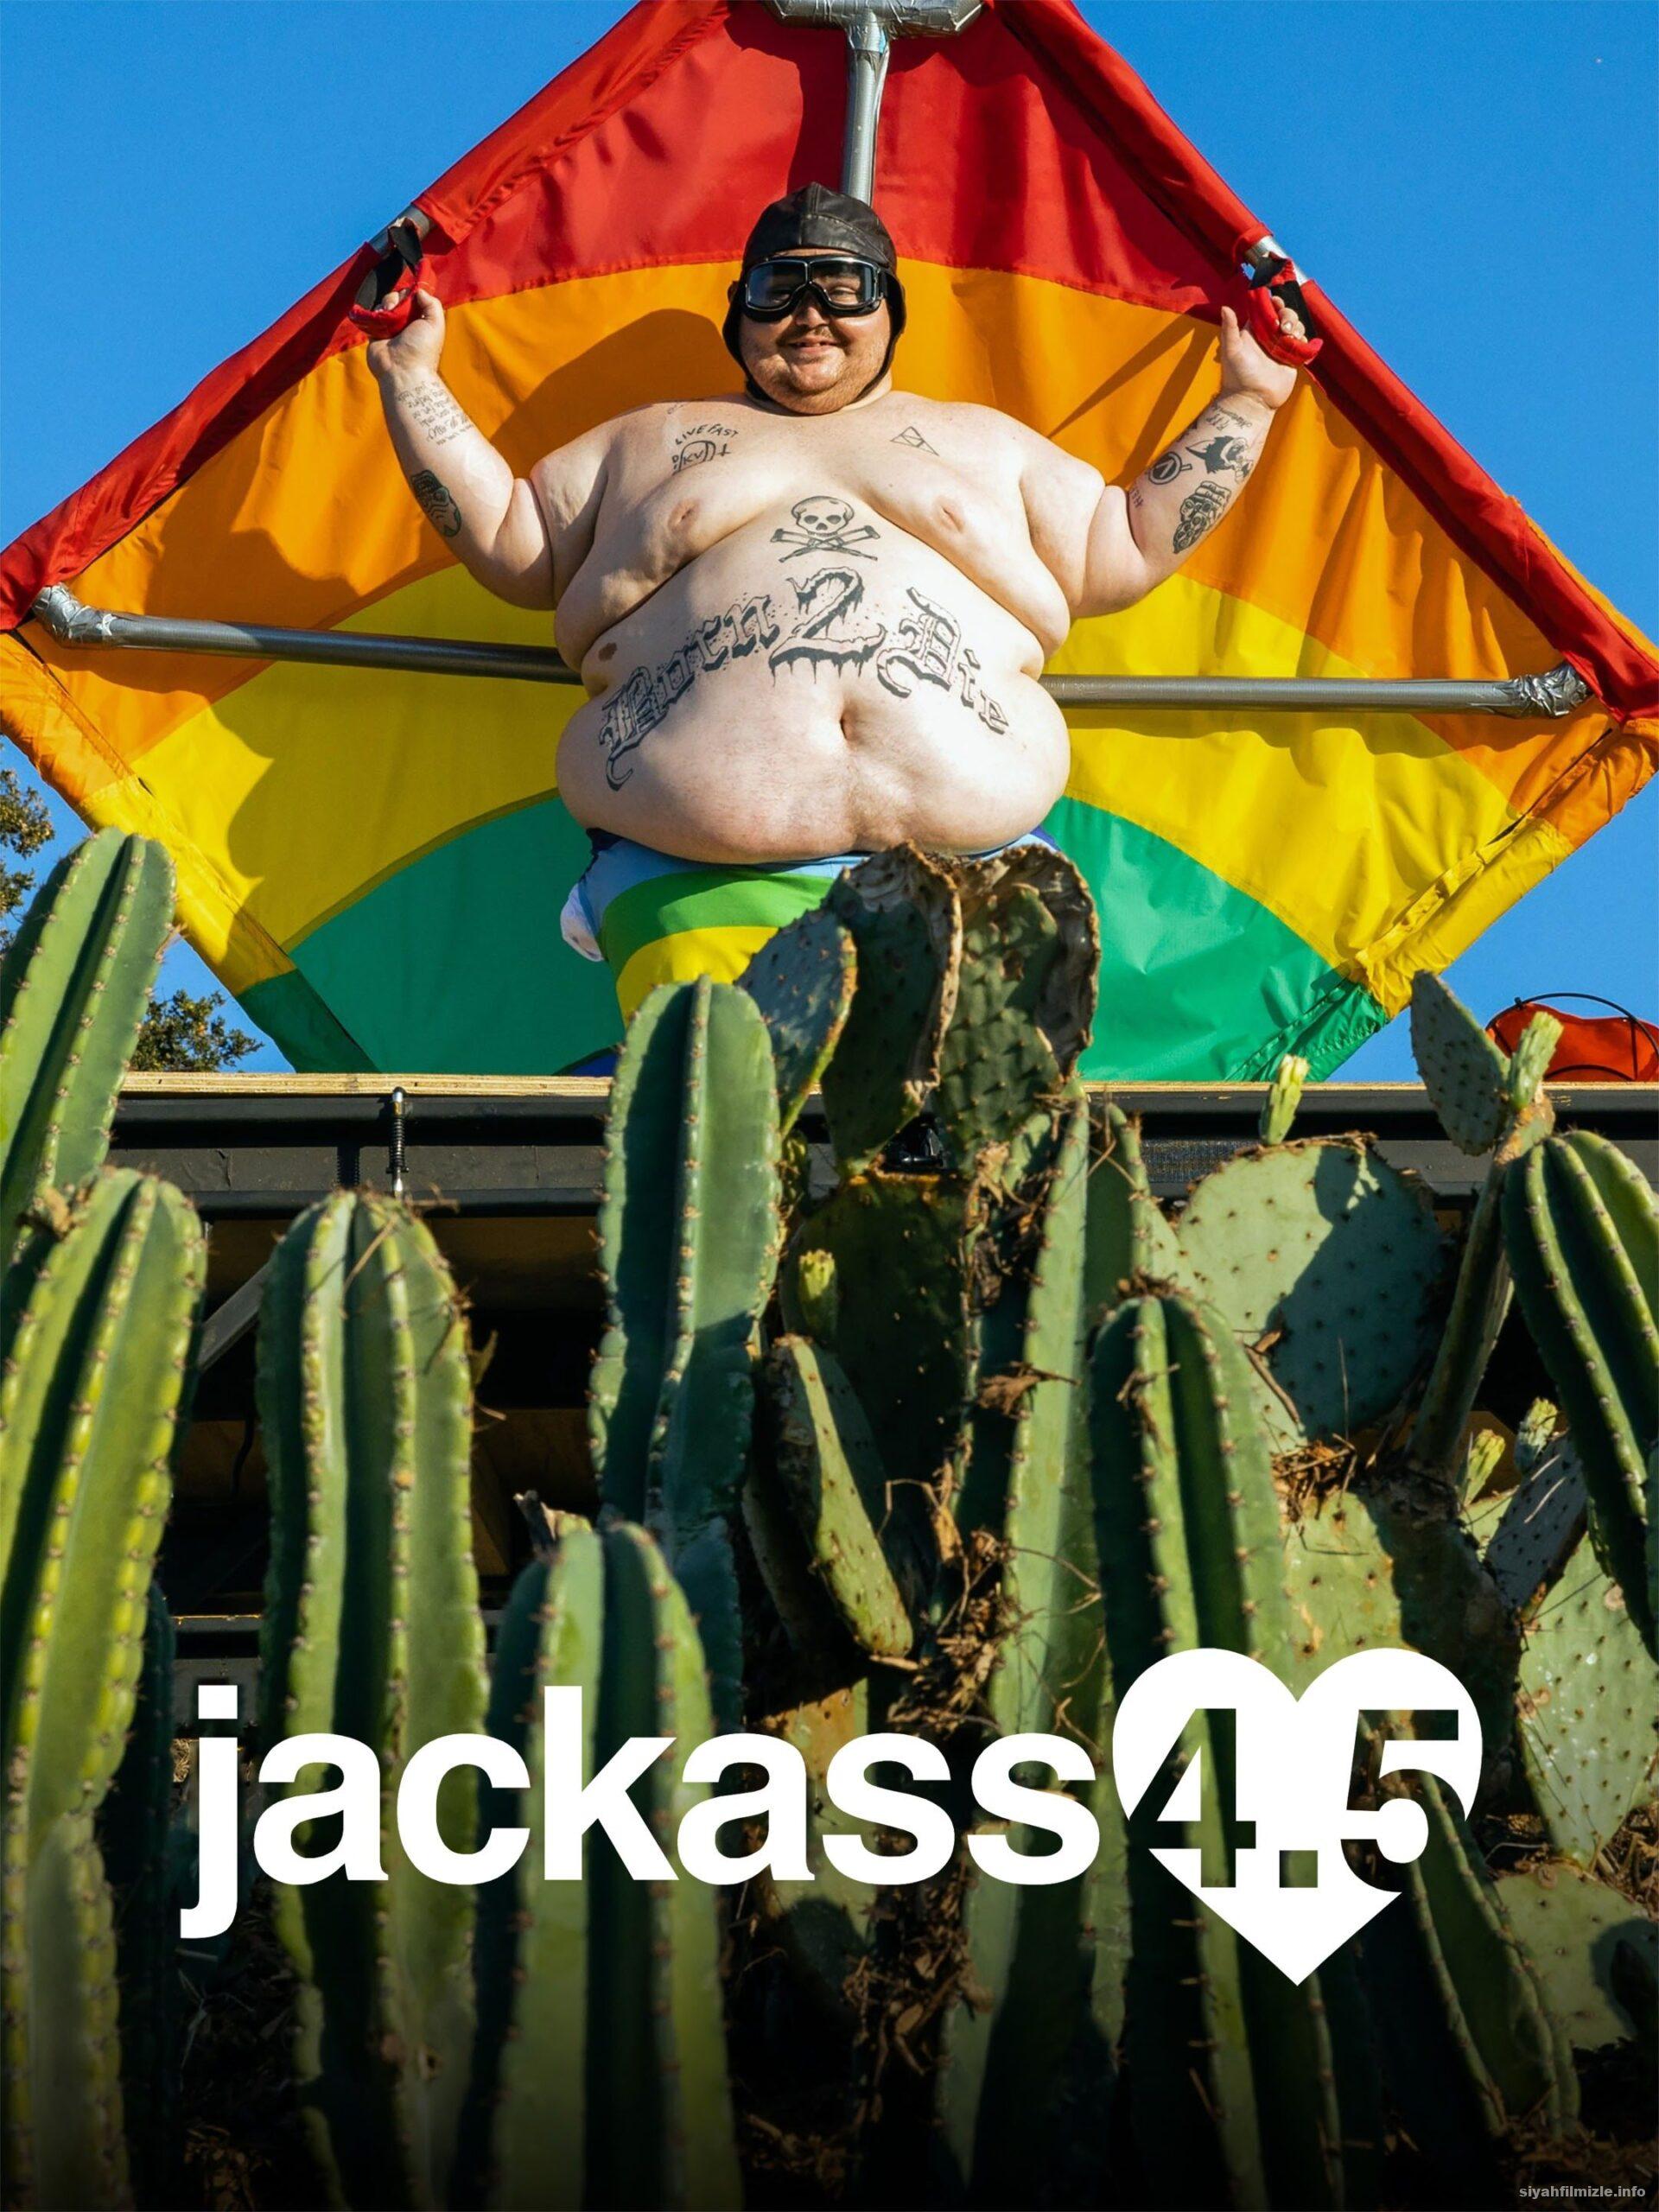 Jackass 4.5 (2022) Filmi Türkçe Altyazılı Full izle